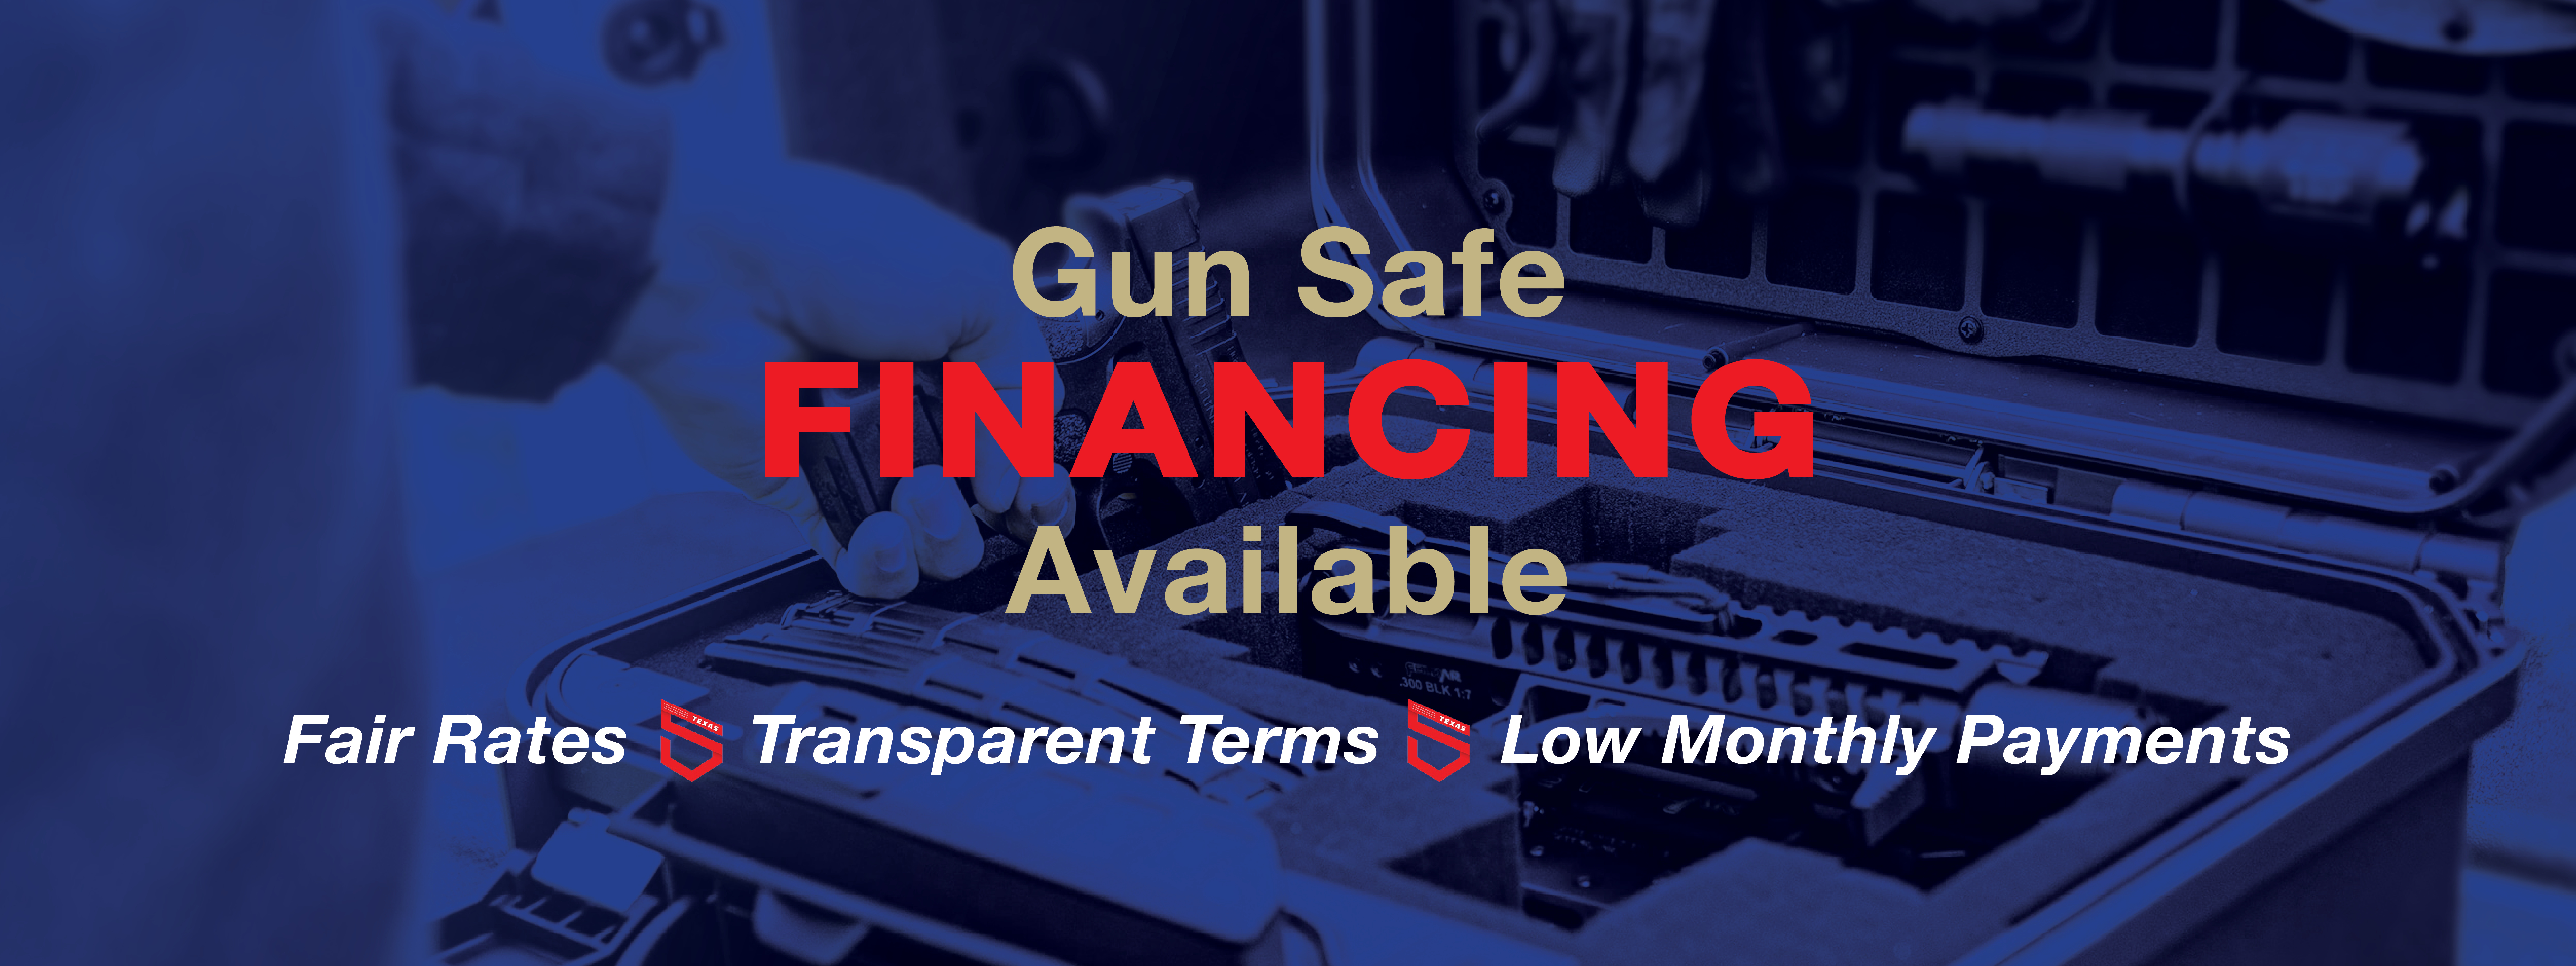 Gun Safe Financing